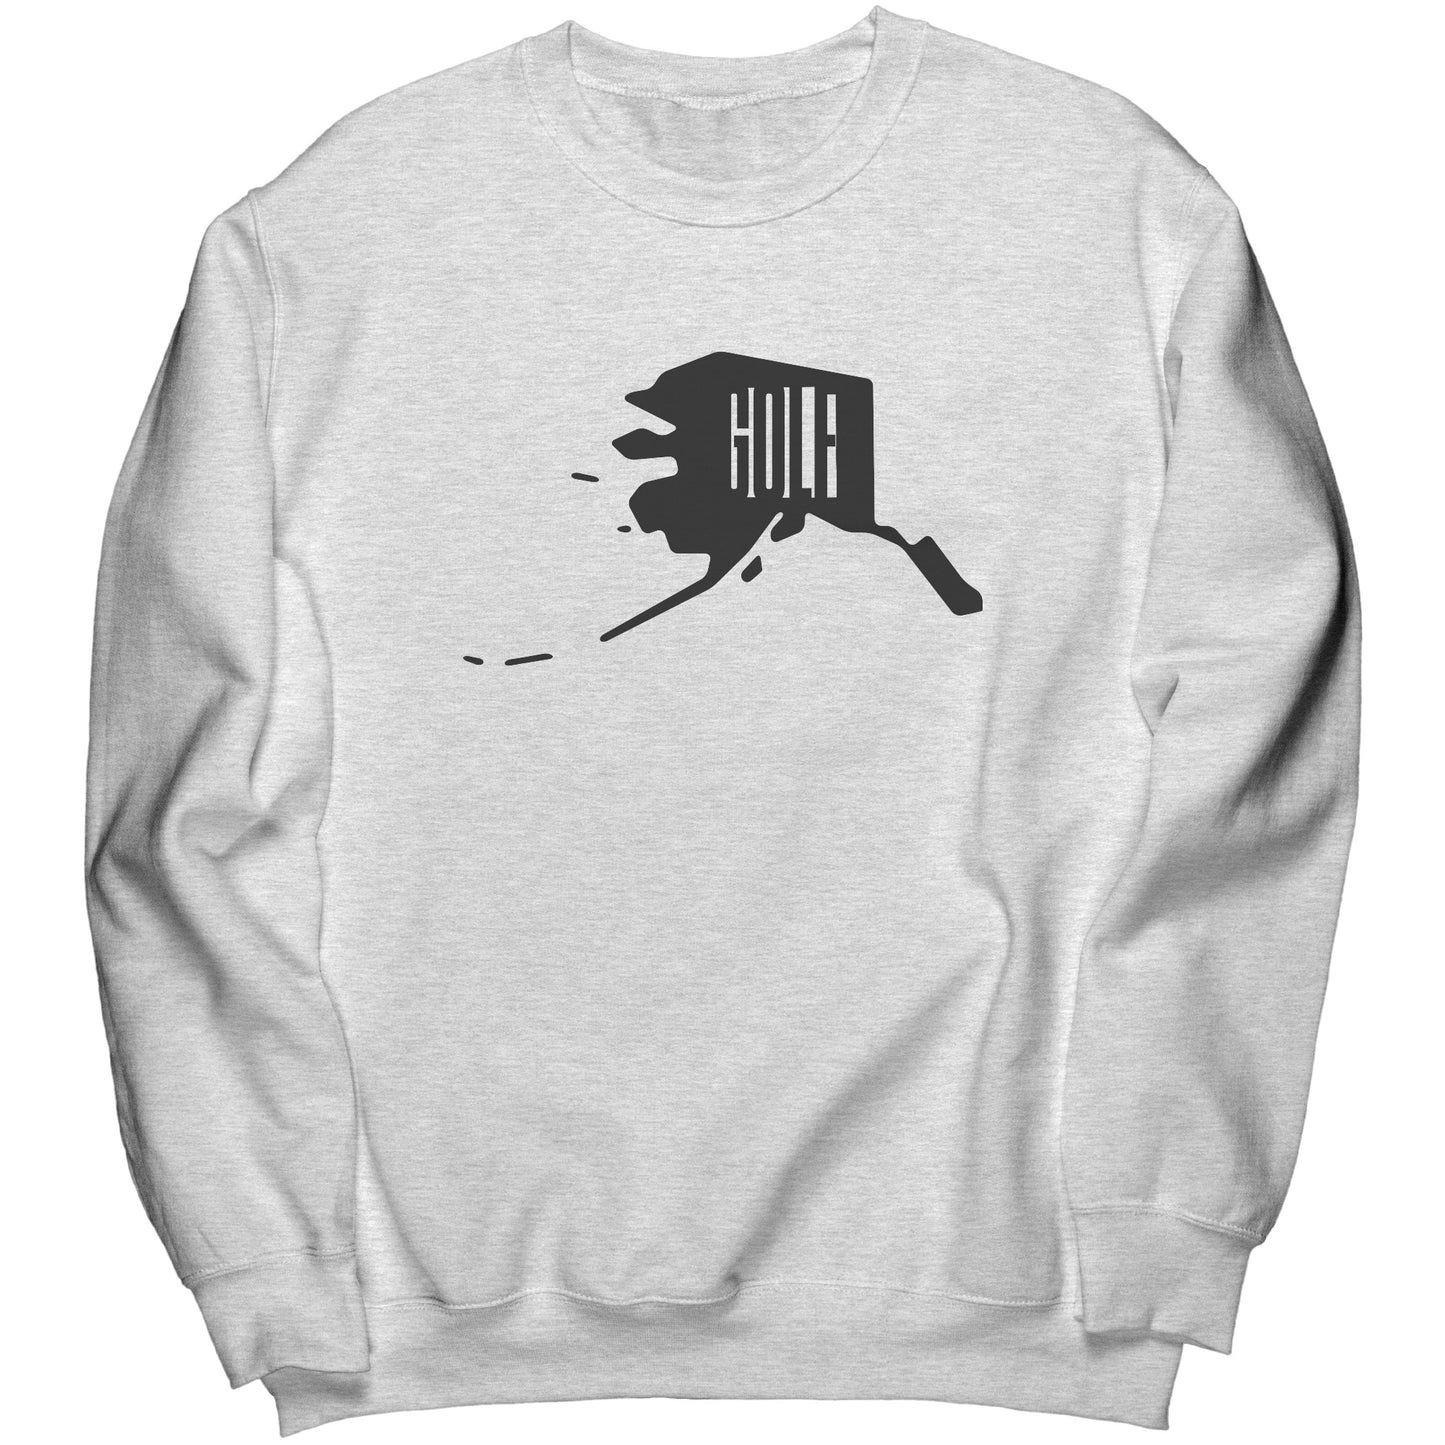 Alaska "Golf" Sweatshirt